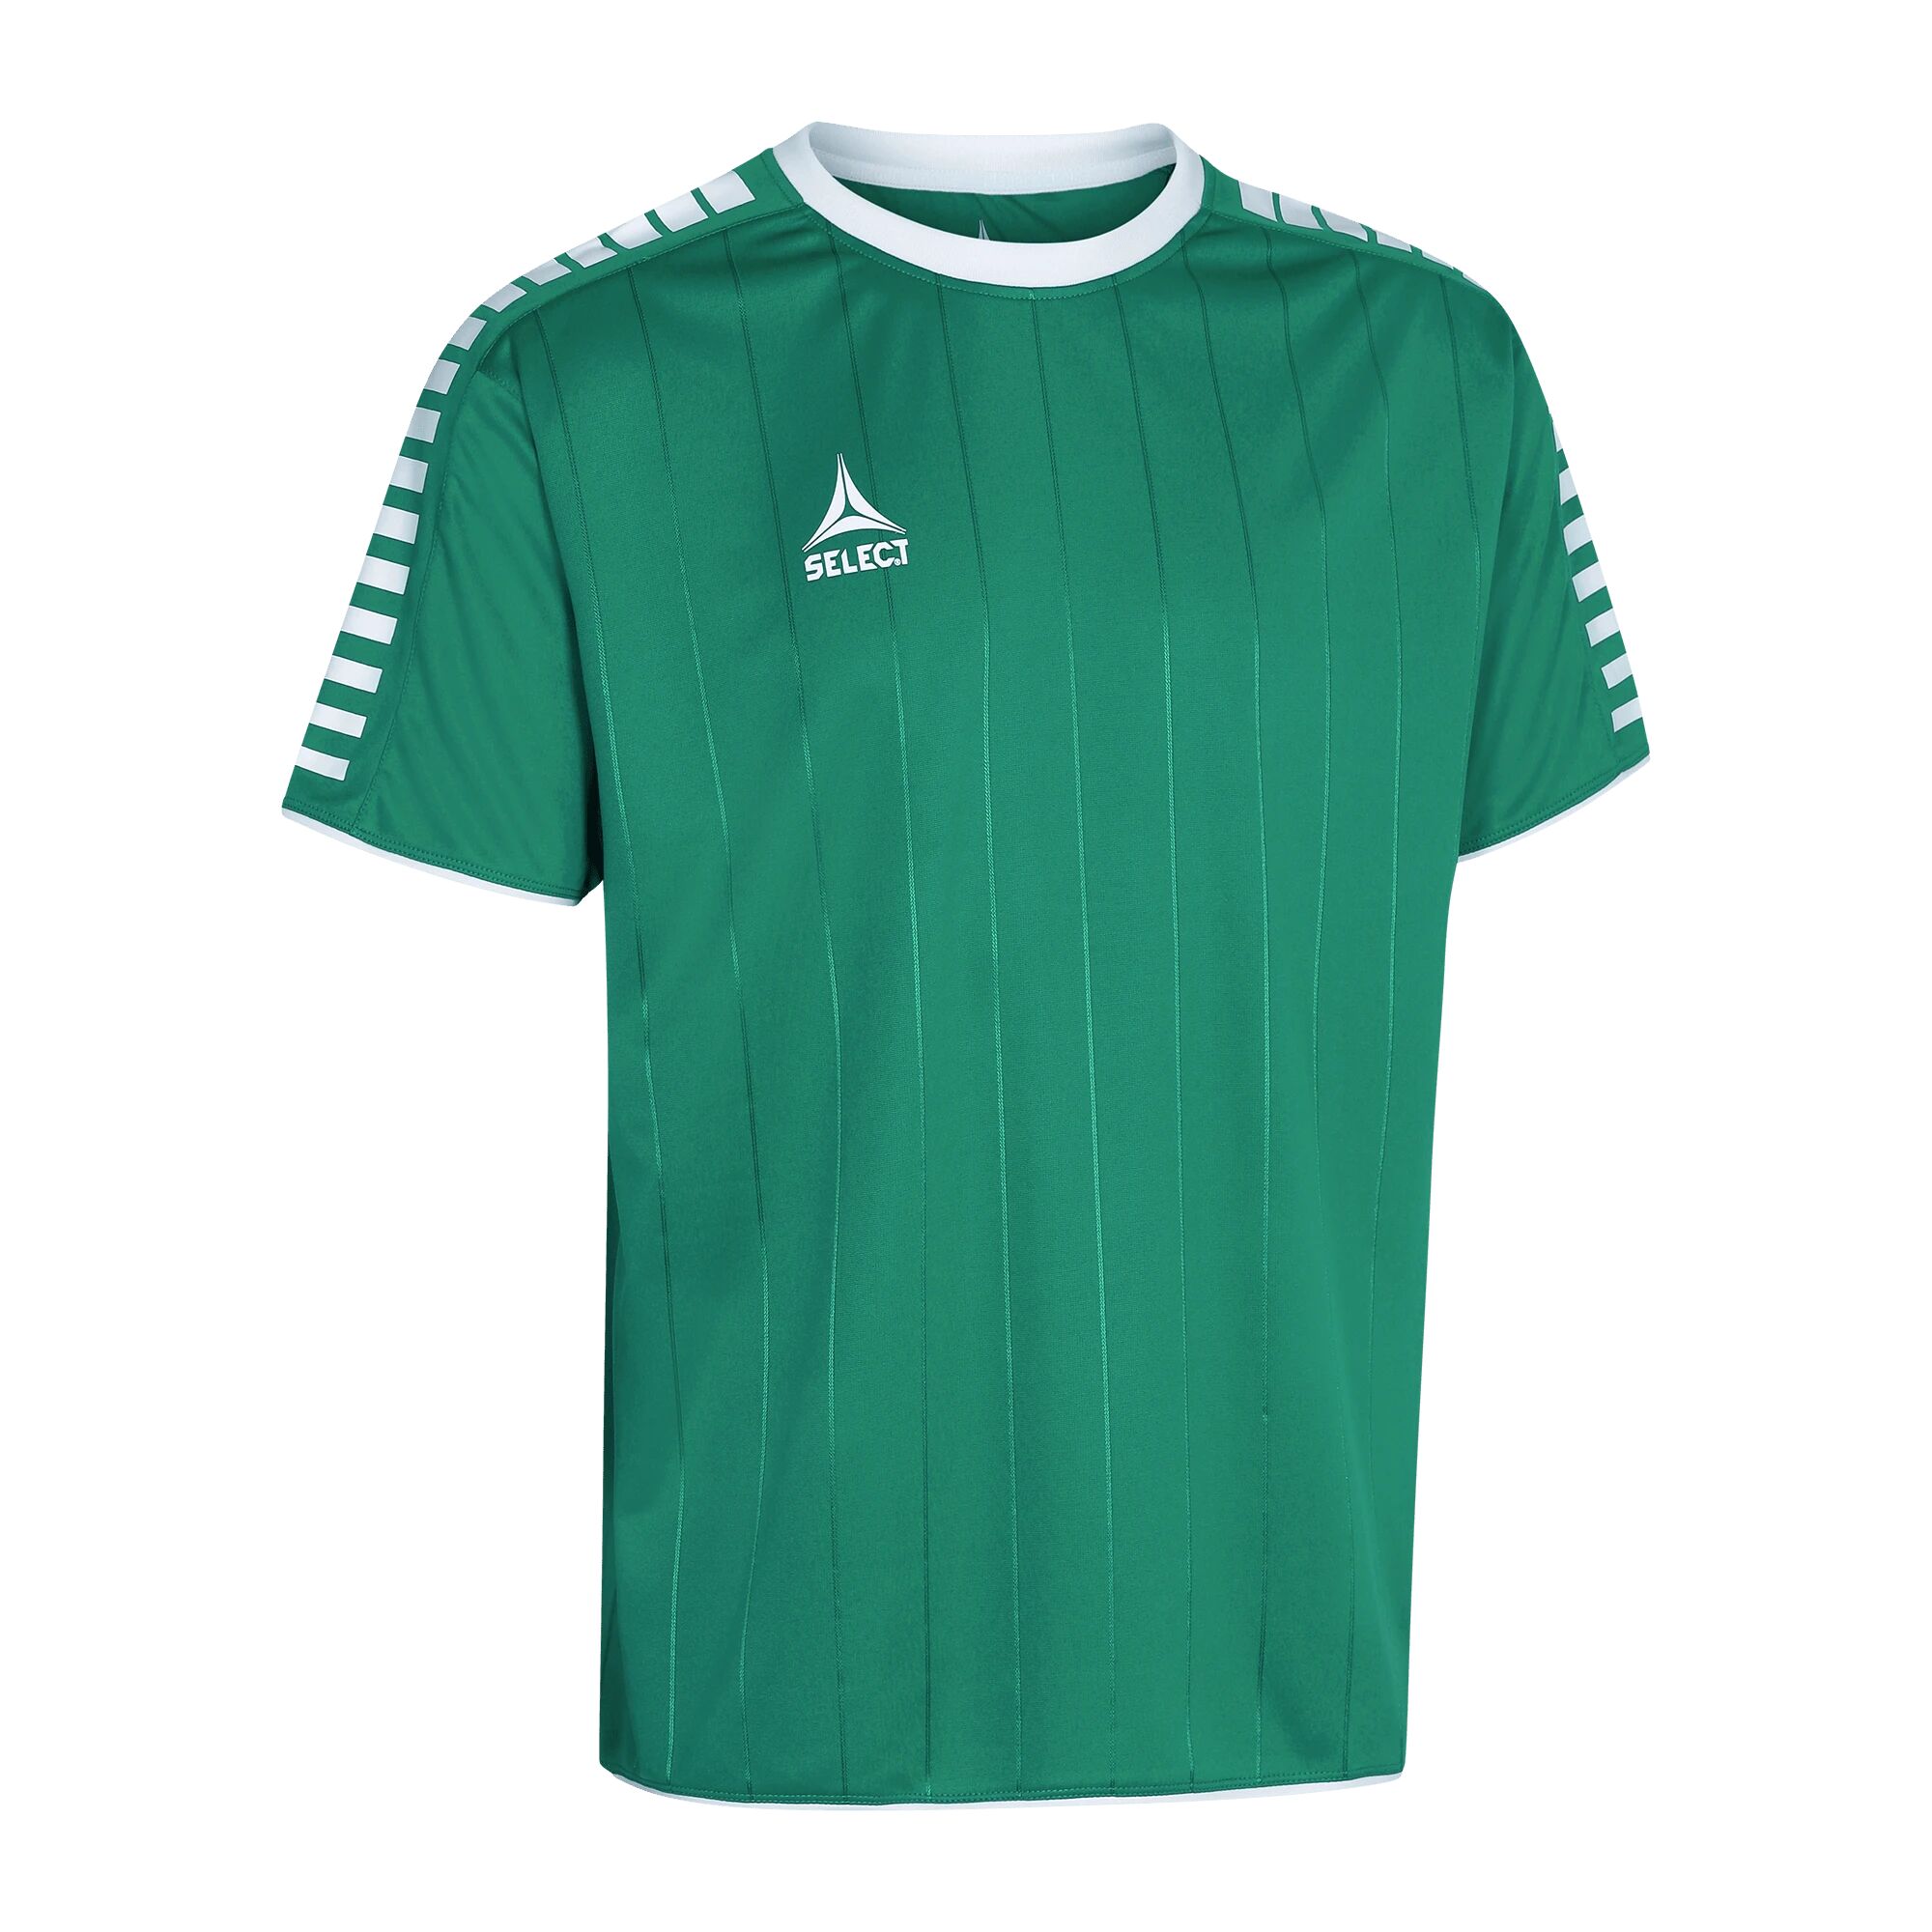 Select Player shirt S/S Argentina, fotballtrøye senior L Green